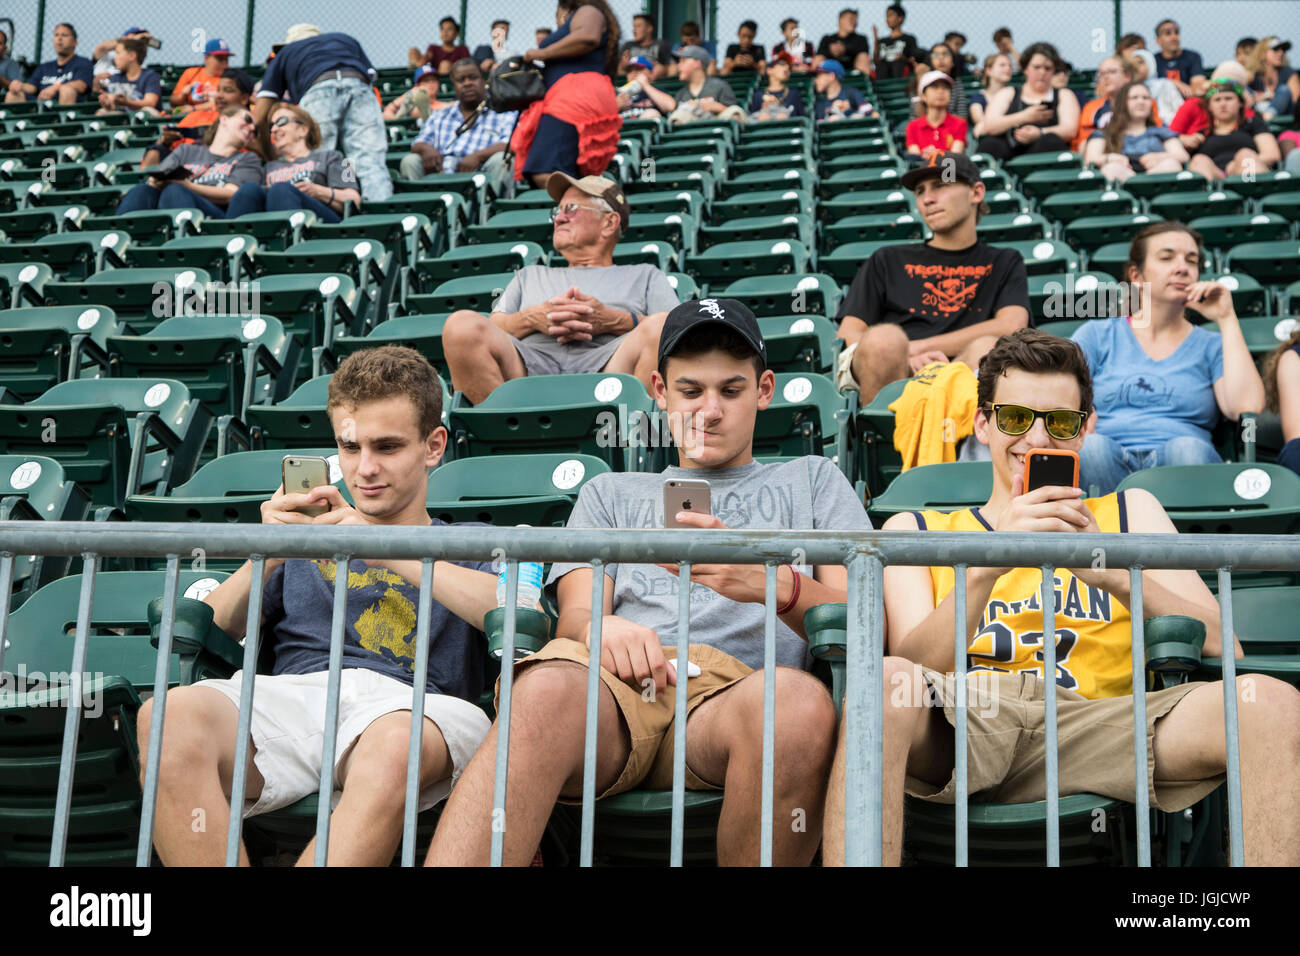 Detroit, Michigan - Jungs im Teenageralter sind geklebt, um ihre Handys während ein Baseball-Spiel der Detroit Tigers im Comerica Park. Stockfoto